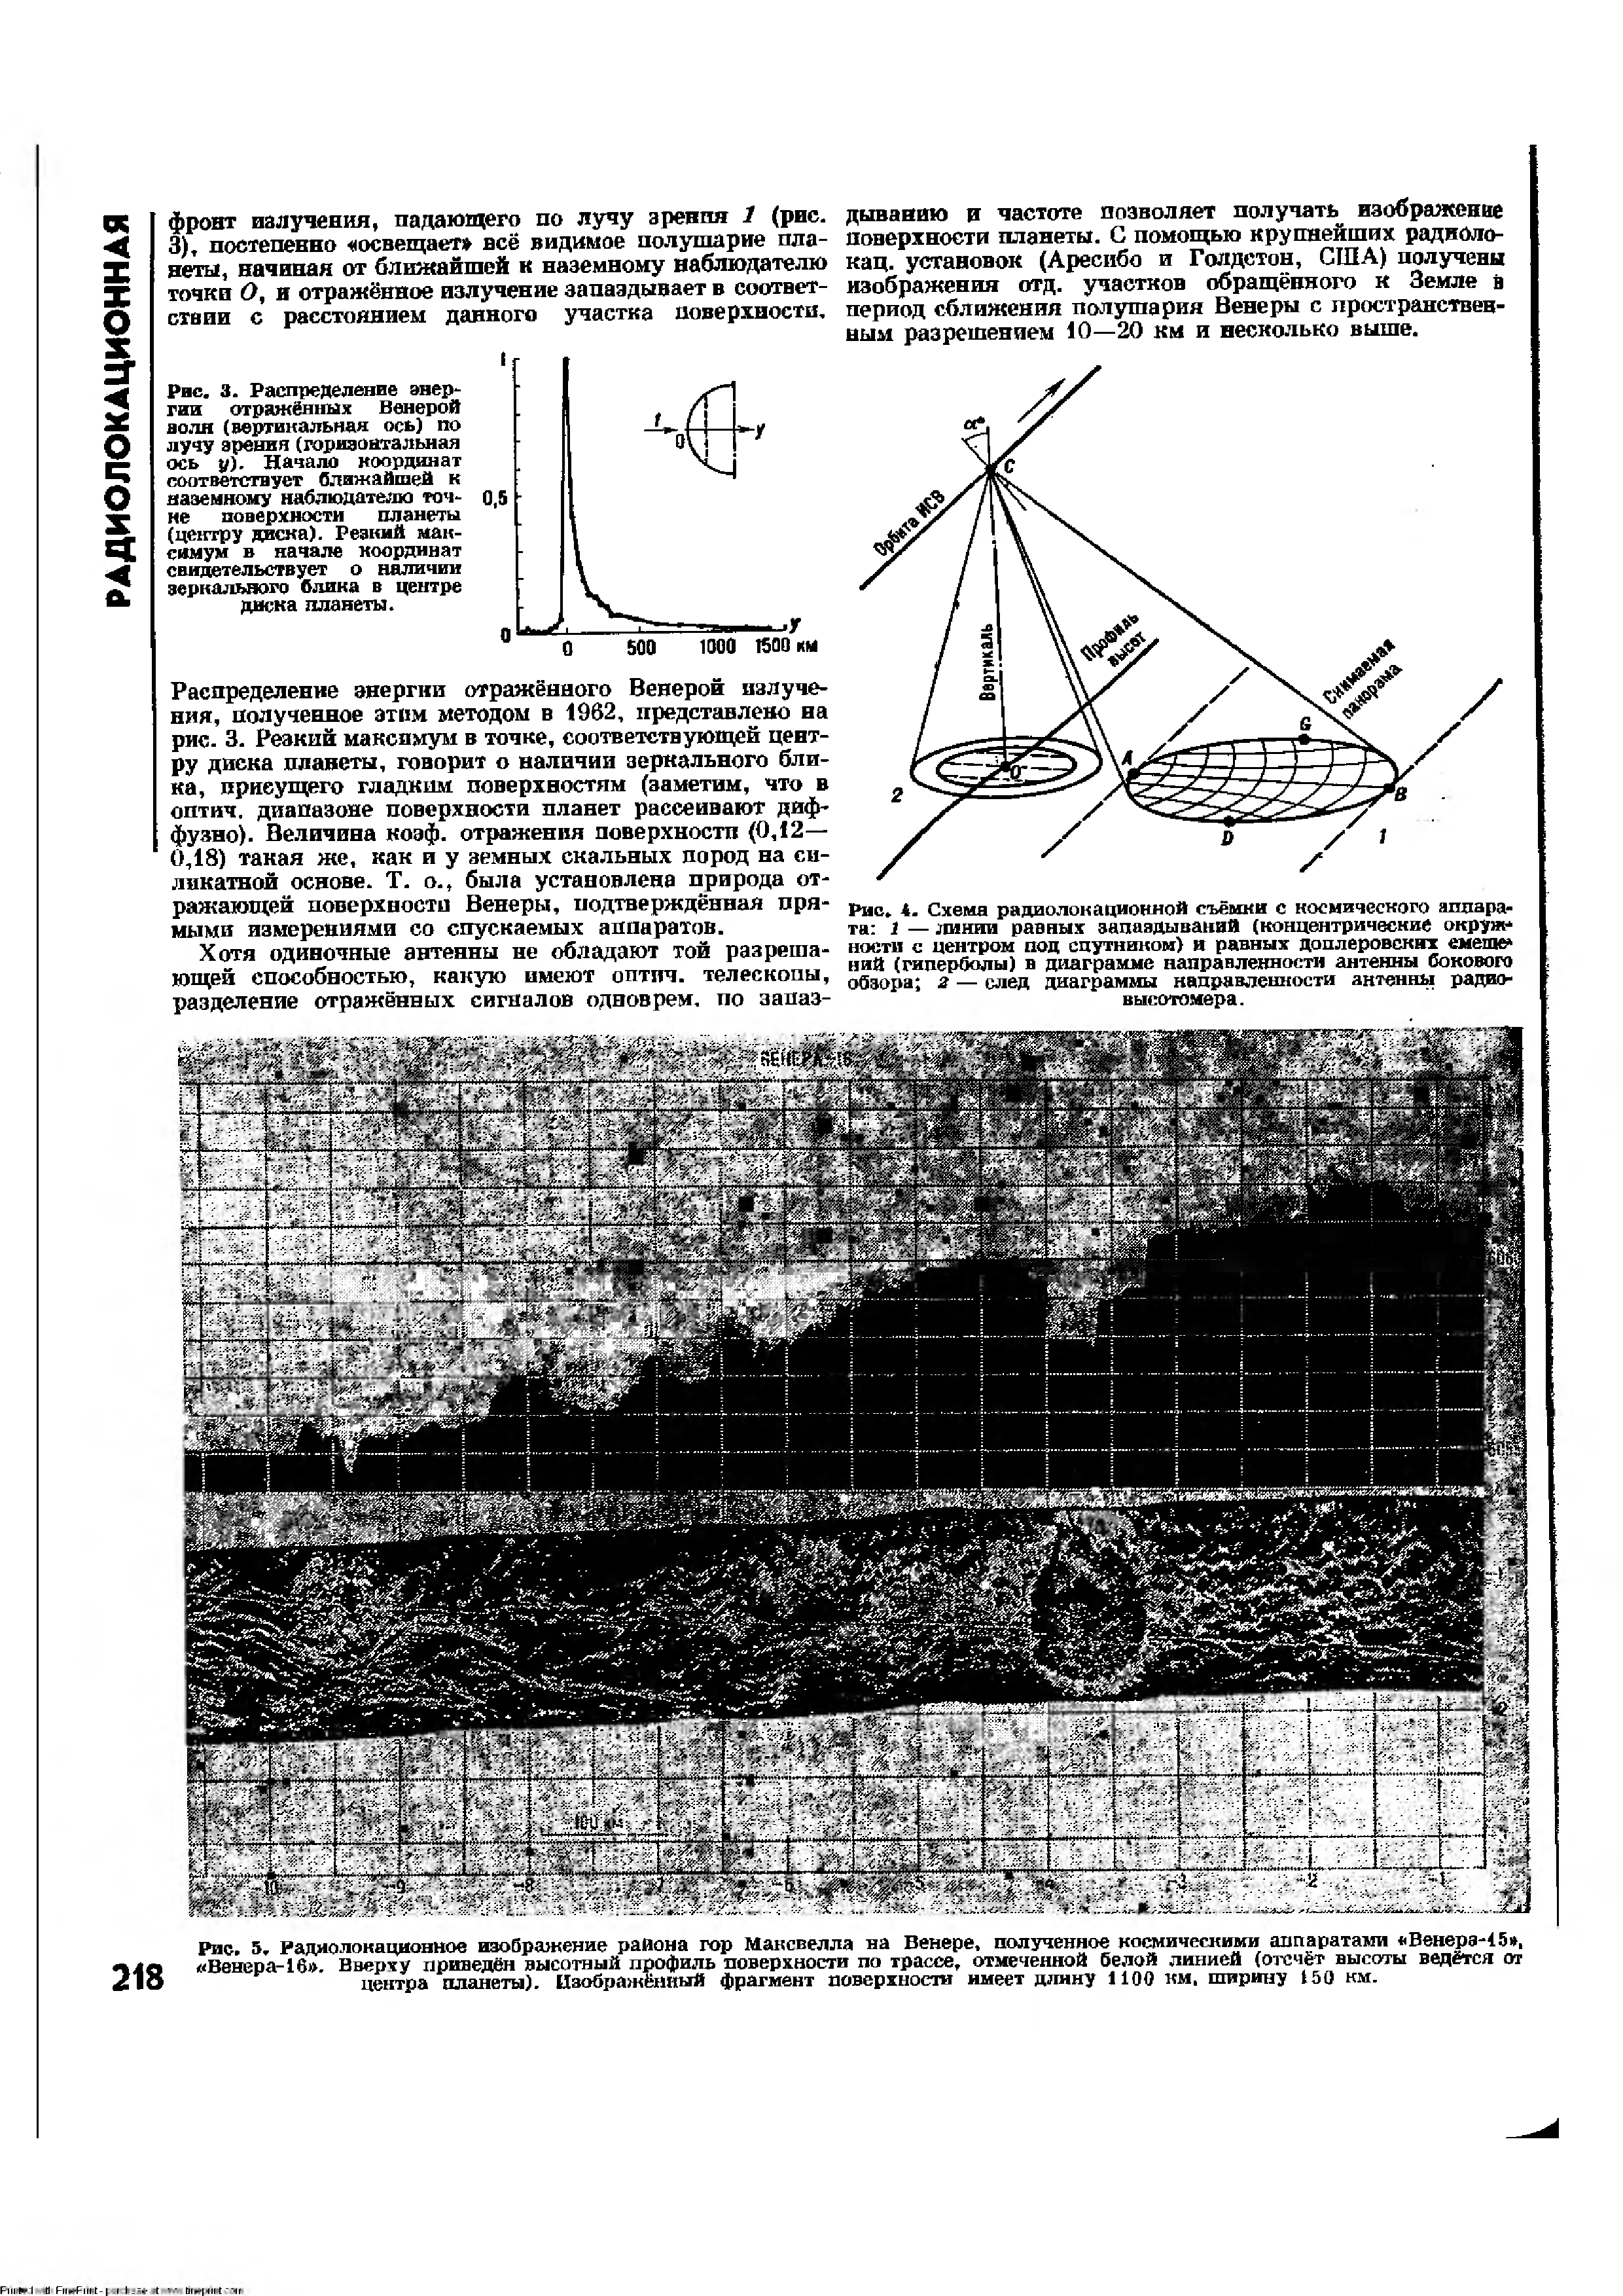 Рис. 3. Радиолокационное изображение района гор Максвелла на Венере, полученное <a href="/info/397751">космическими аппаратами</a> Венерэ-15 , Венера-16 . Вверху приведён высотный <a href="/info/8468">профиль поверхности</a> по трассе, отмеченной белой линией (отсчёт высоты ведётся от центра планеты). Нзображёнтай фрагмент поверхности имеет длину 1100 км, ширину 150 км.
